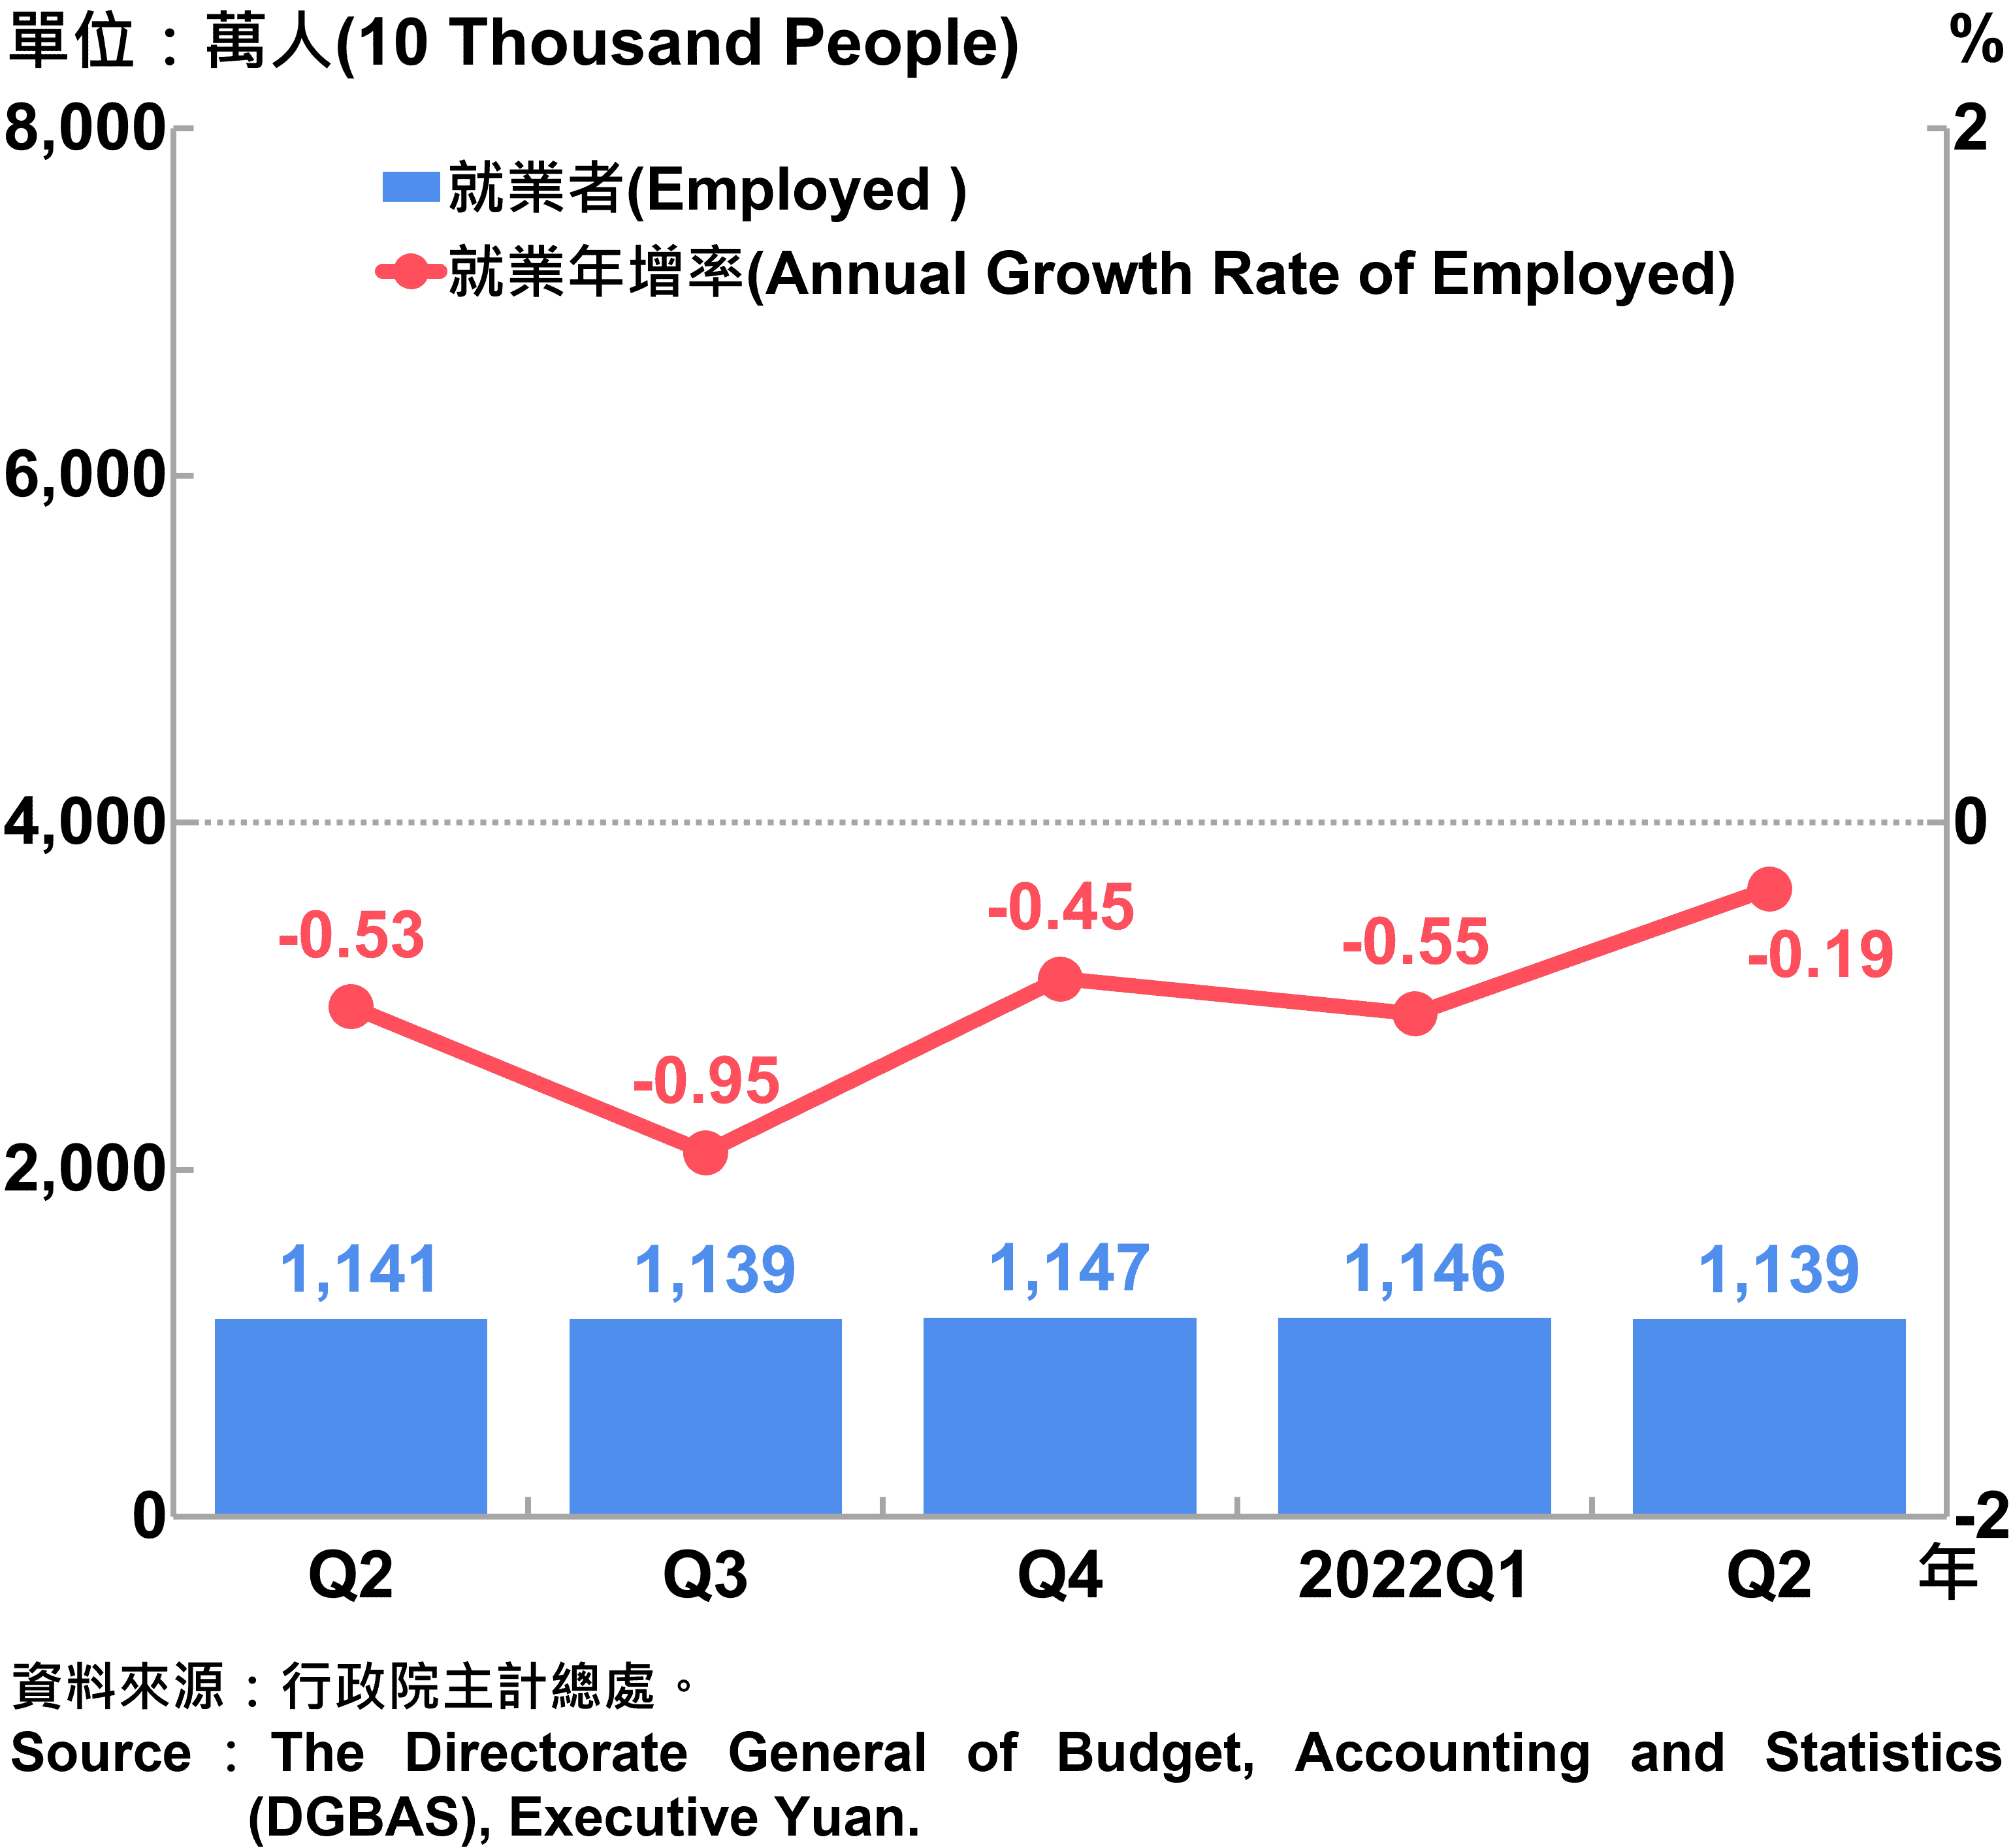 就業人數及就業年增率 Employed and Annual Growth Rate of Employed